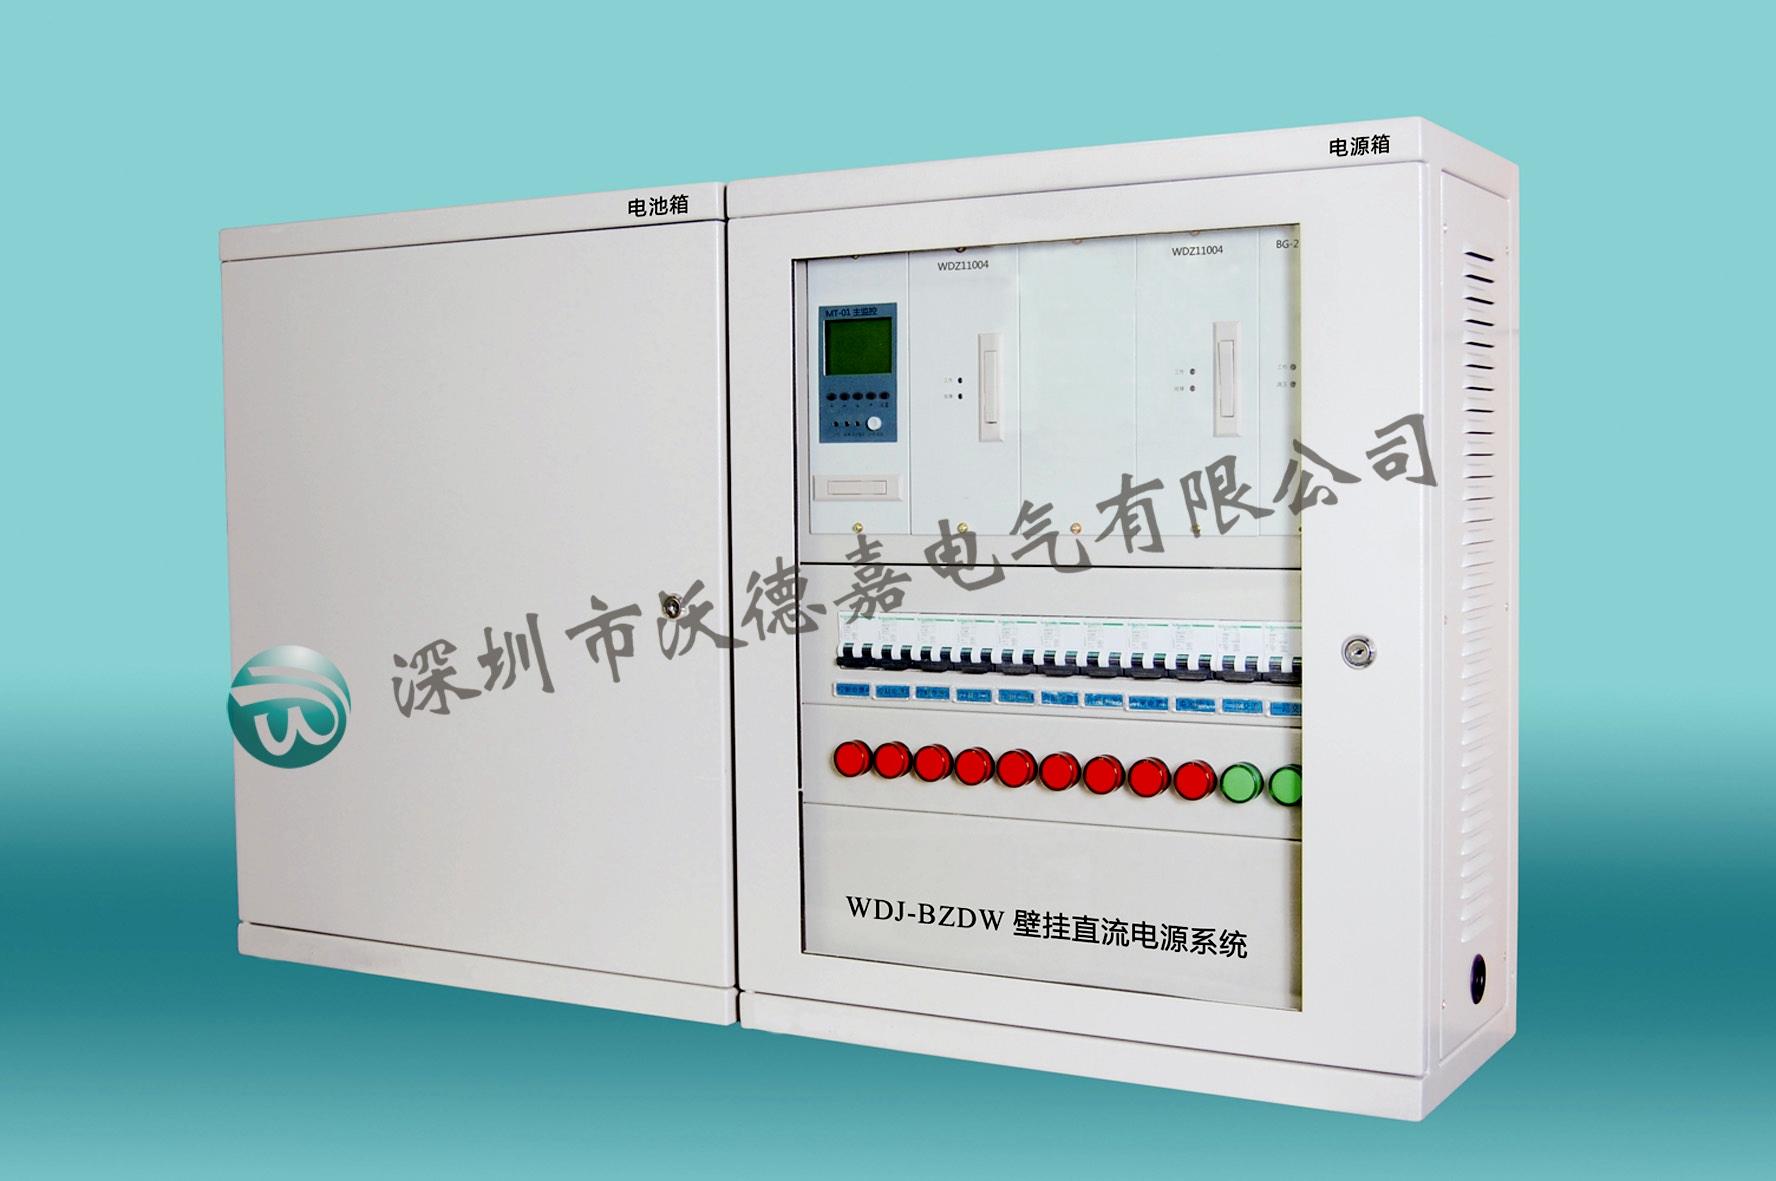 WDJ-BZDW壁挂式直流电源系统